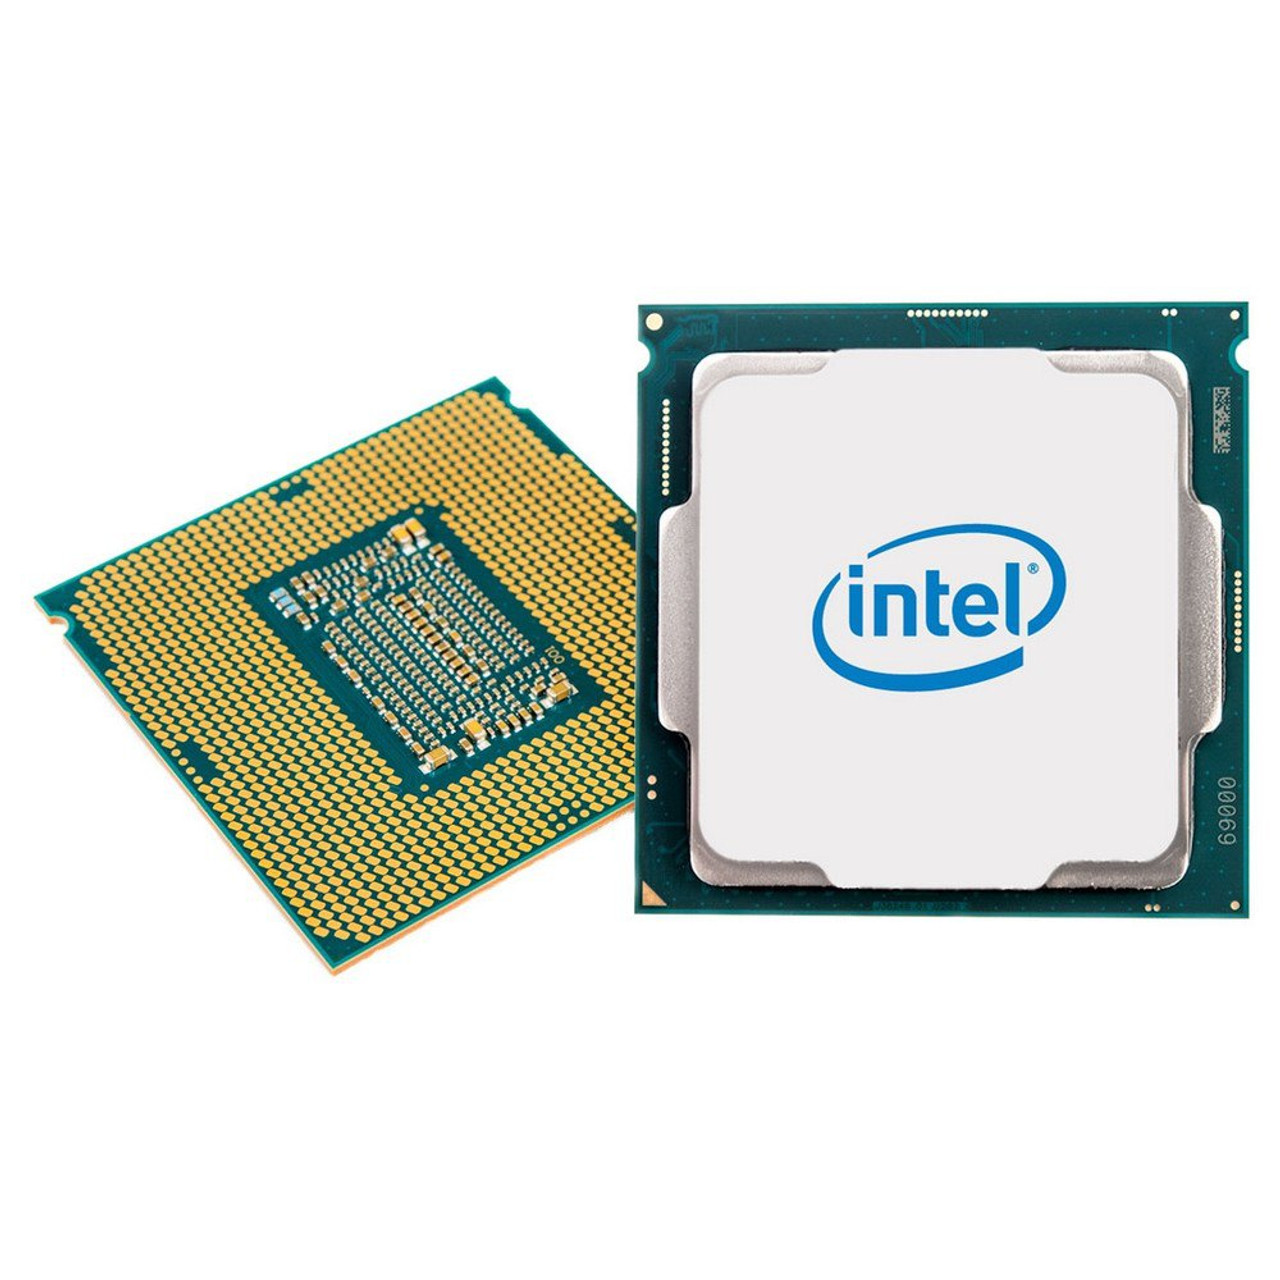 Intel SLBF7 Xeon E5530 2.40 GHz 5.86 GT/s - Velocity Tech Solutions